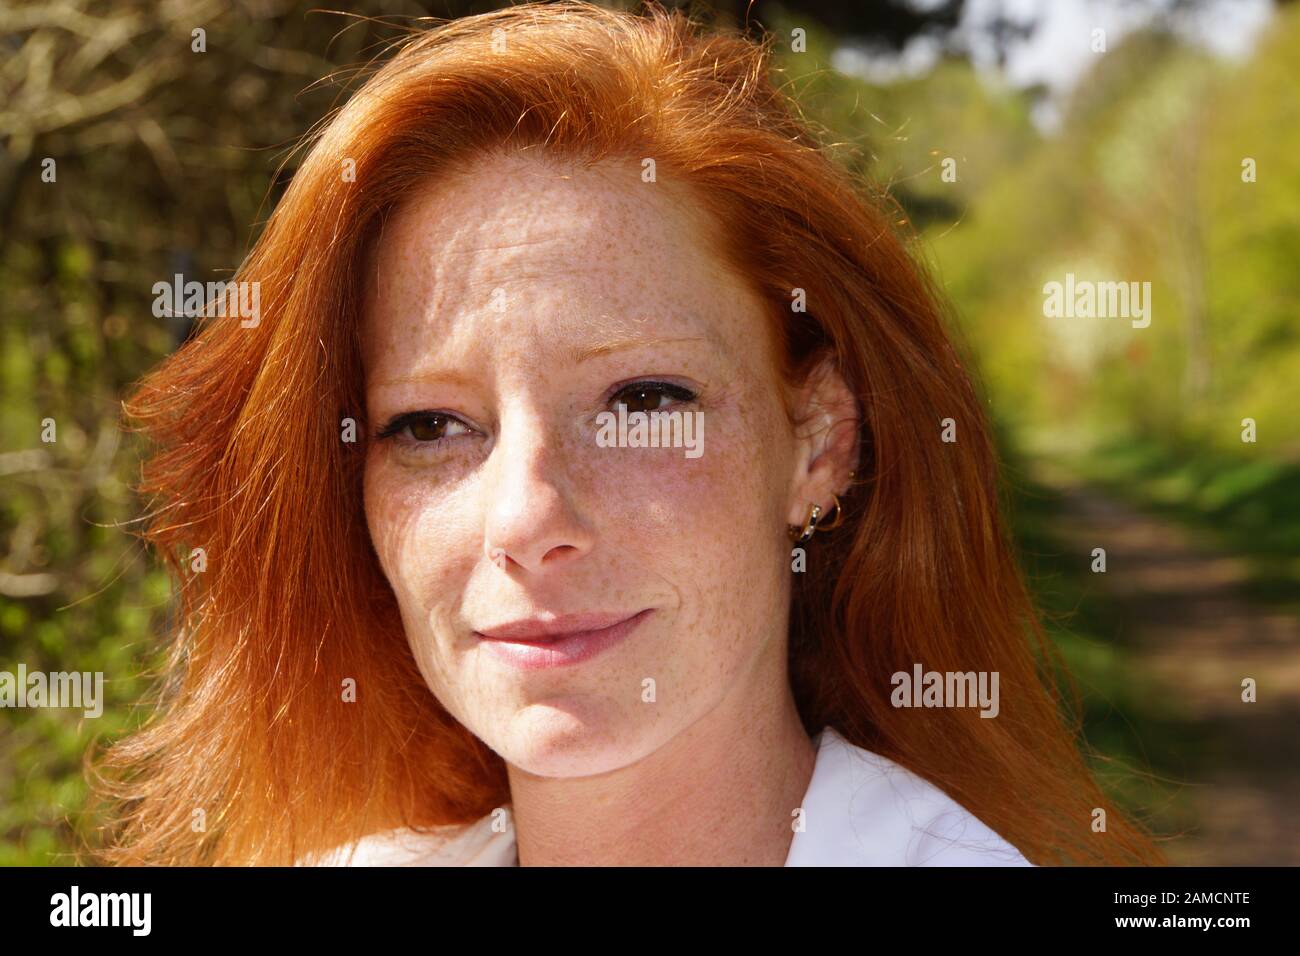 Portrait einer jungen rothaarigen Frau Stock Photo - Alamy